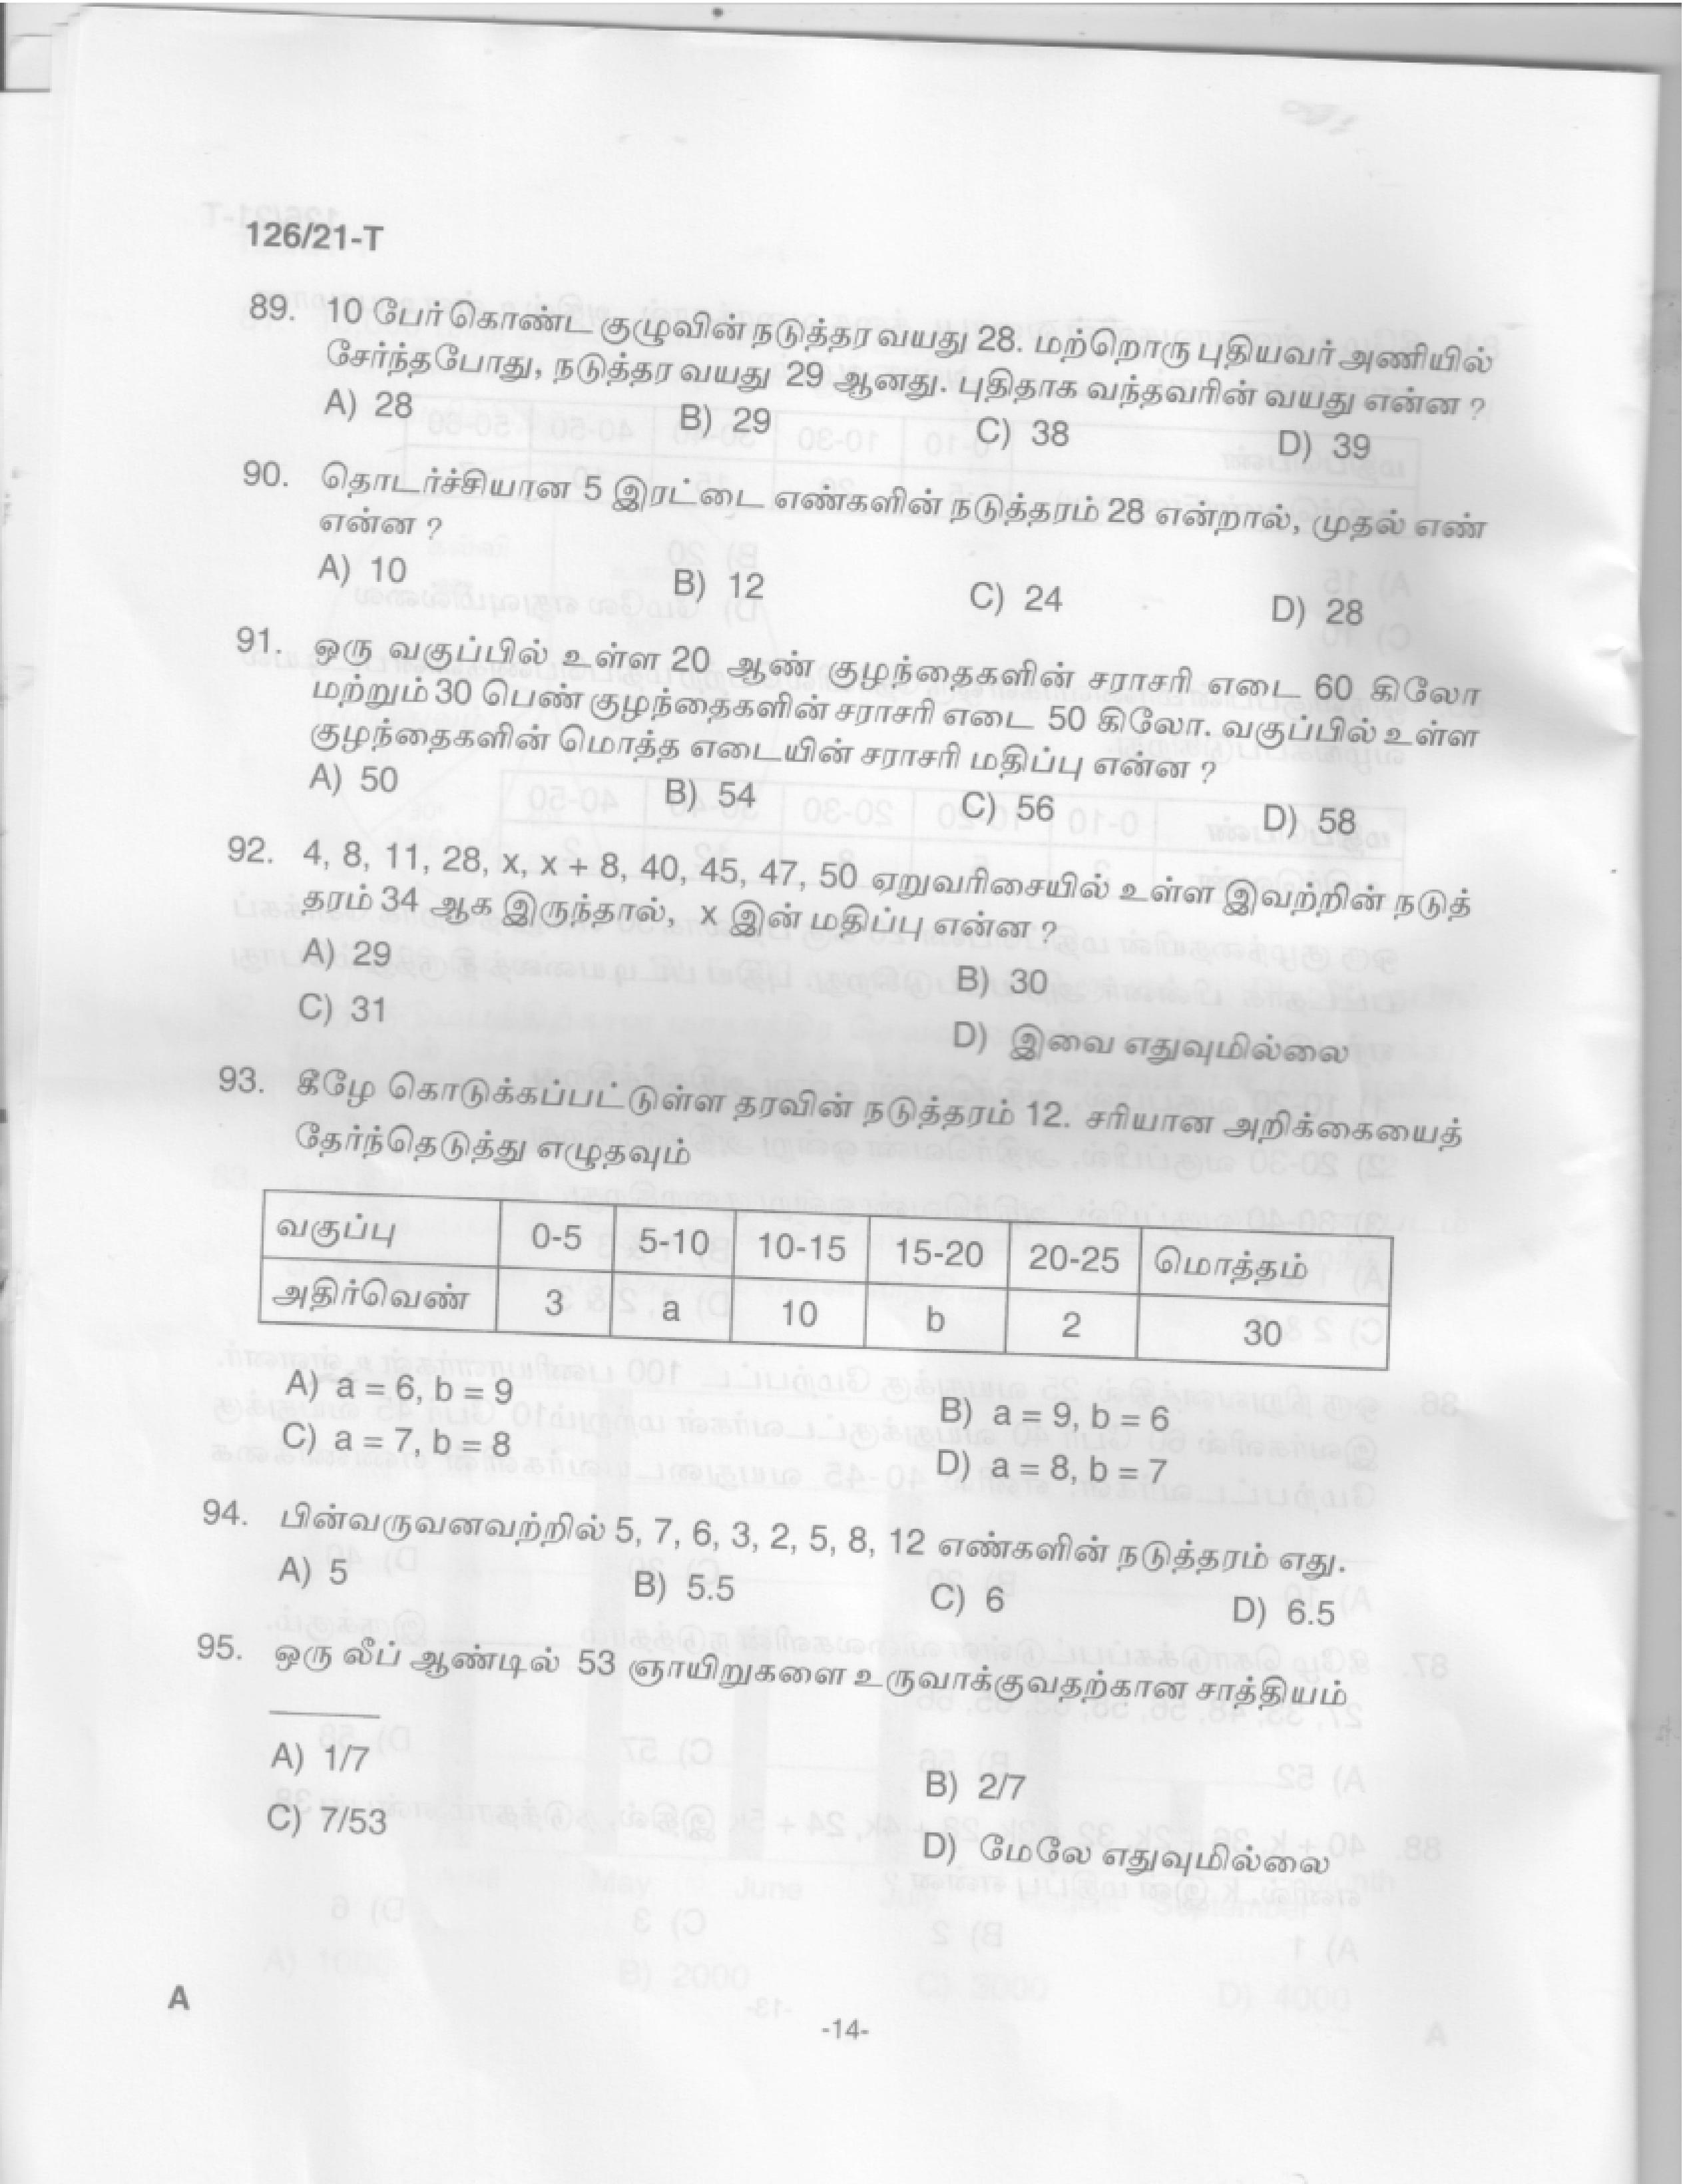 Upto SSLC Level Main Exam Assistant Compiler Tamil Exam 2021 Code 1262021 T 12